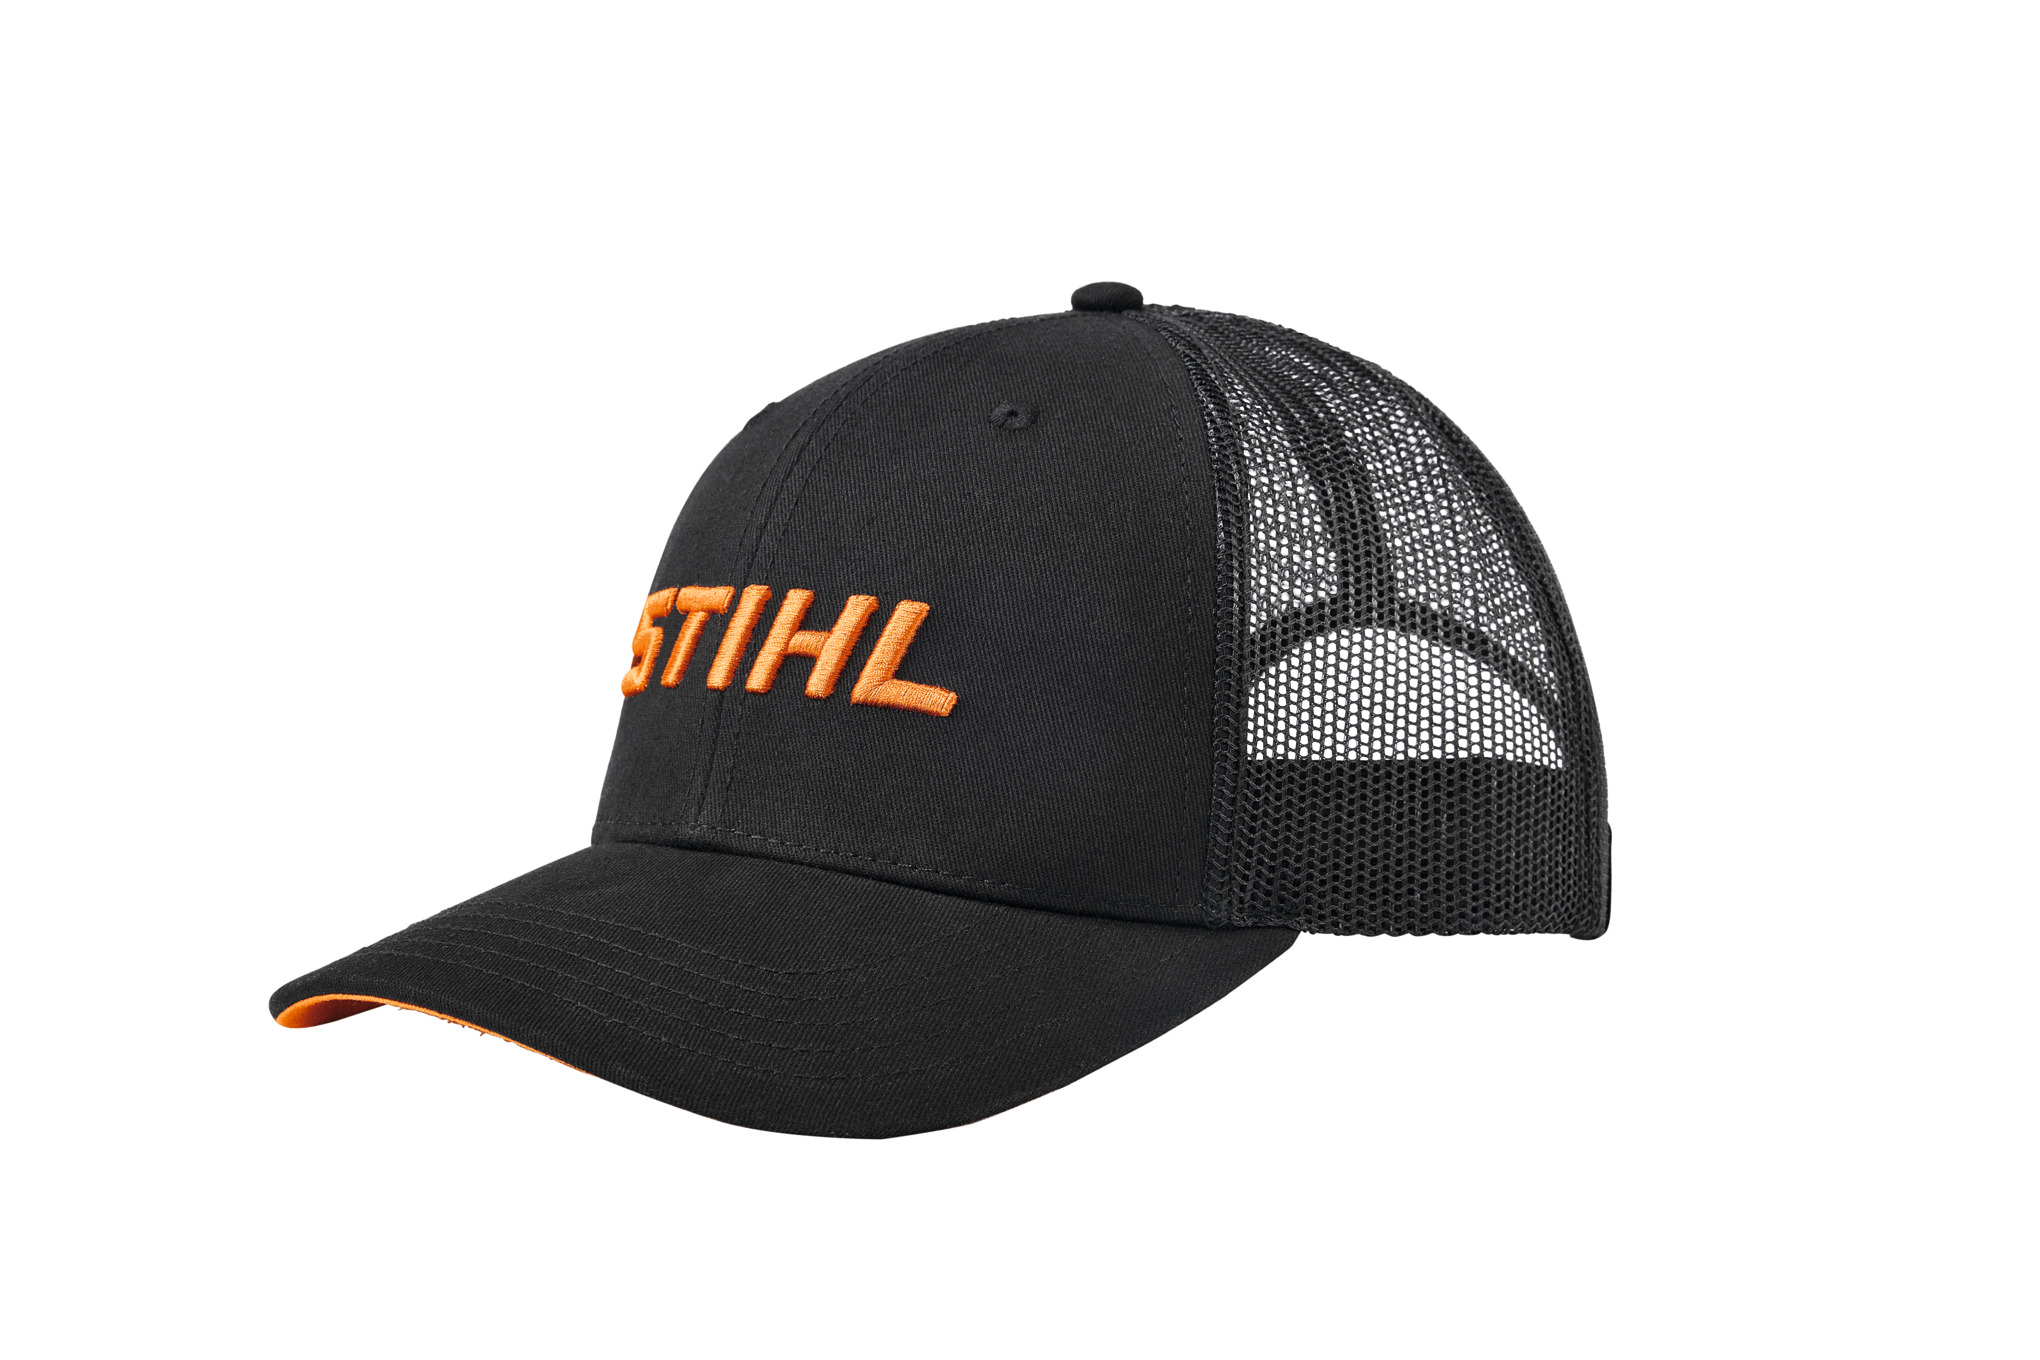 STIHL logo mesh cap